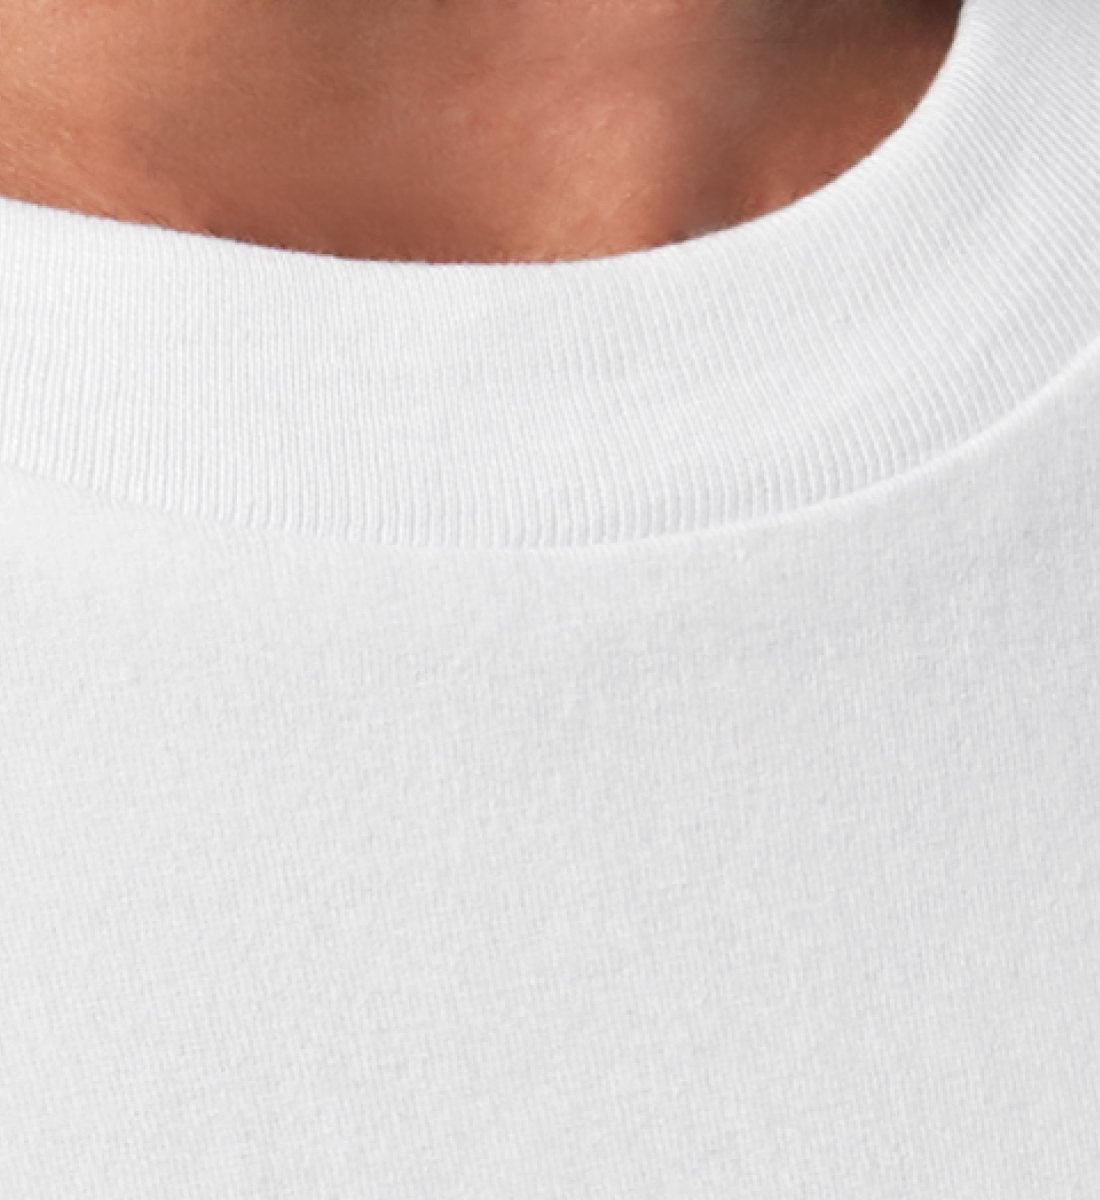 Weißes T-Shirt Relaxed Fit Unisex für Damen und Herren bedruckt mit Print Design Aufdruck der Walk your Talk Collection im Roger Rockawoo Clothing Webstore Subcultures Finest